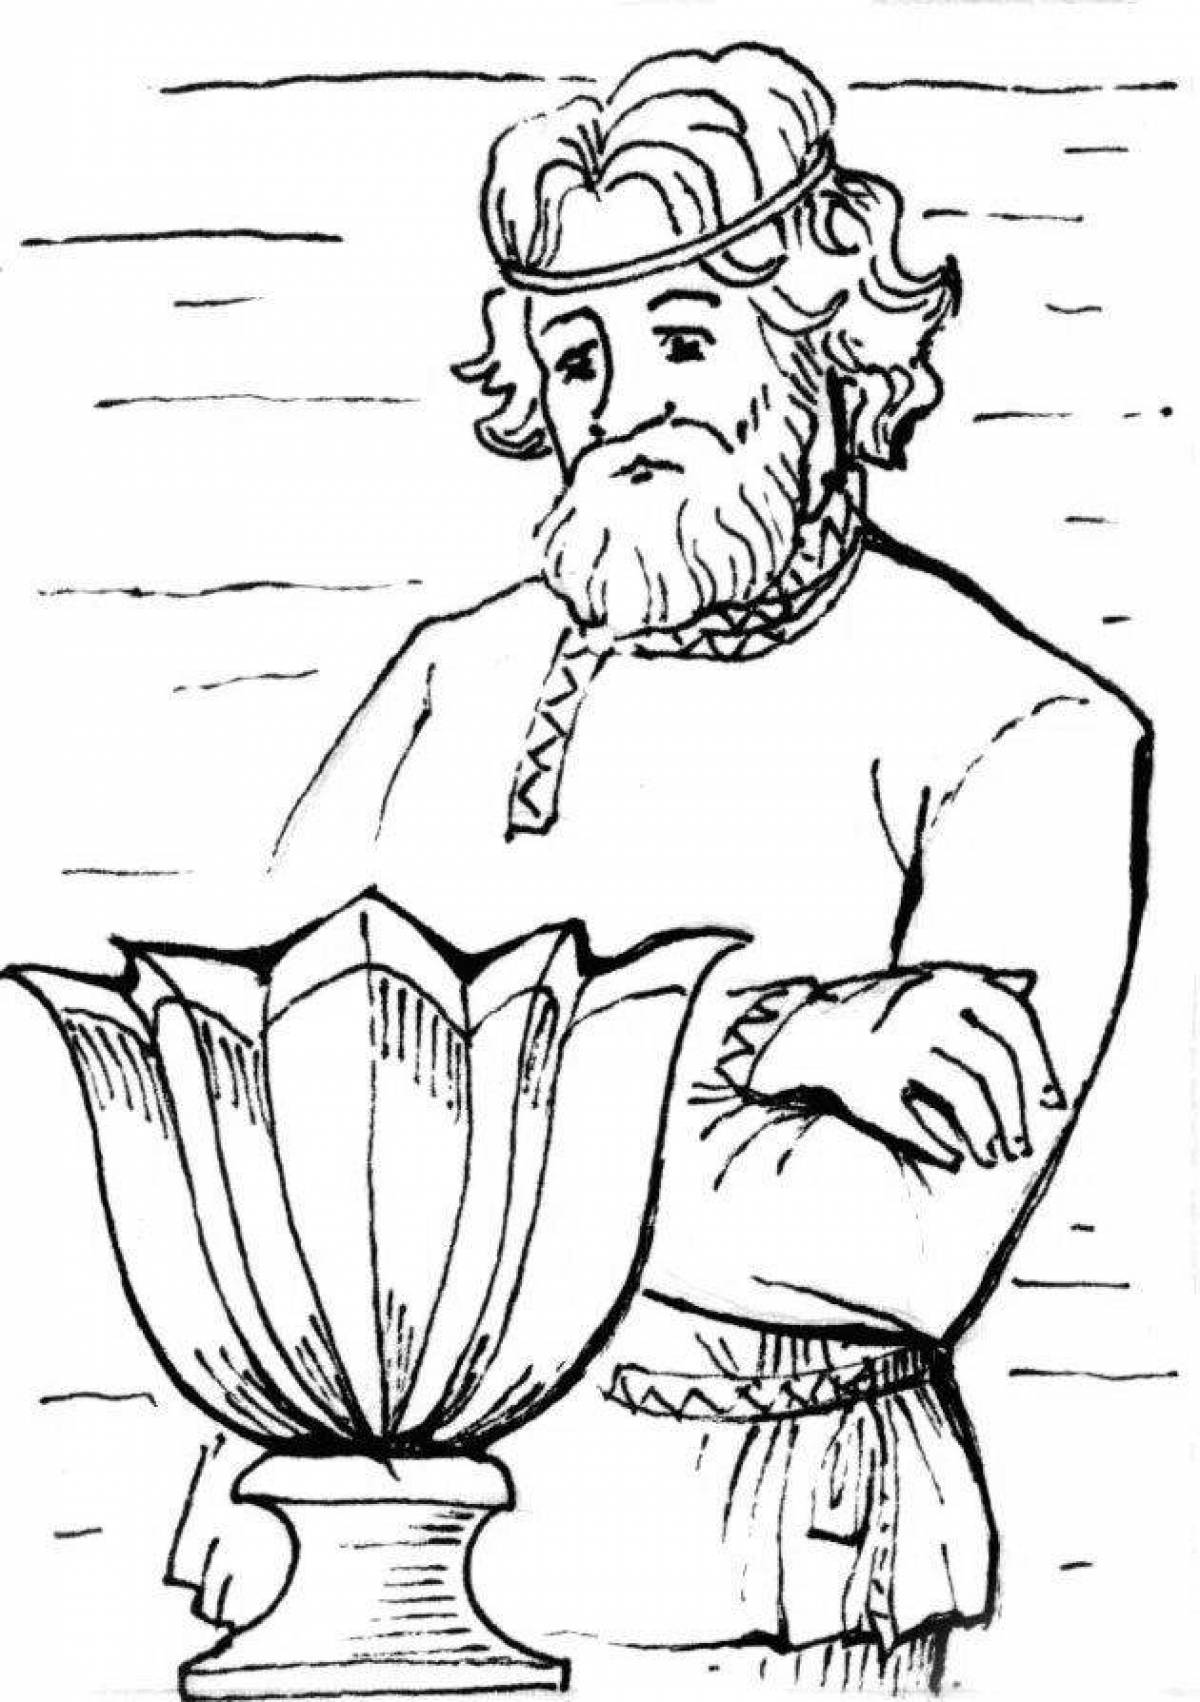 Иллюстрация к рассказу Бажова каменный цветок